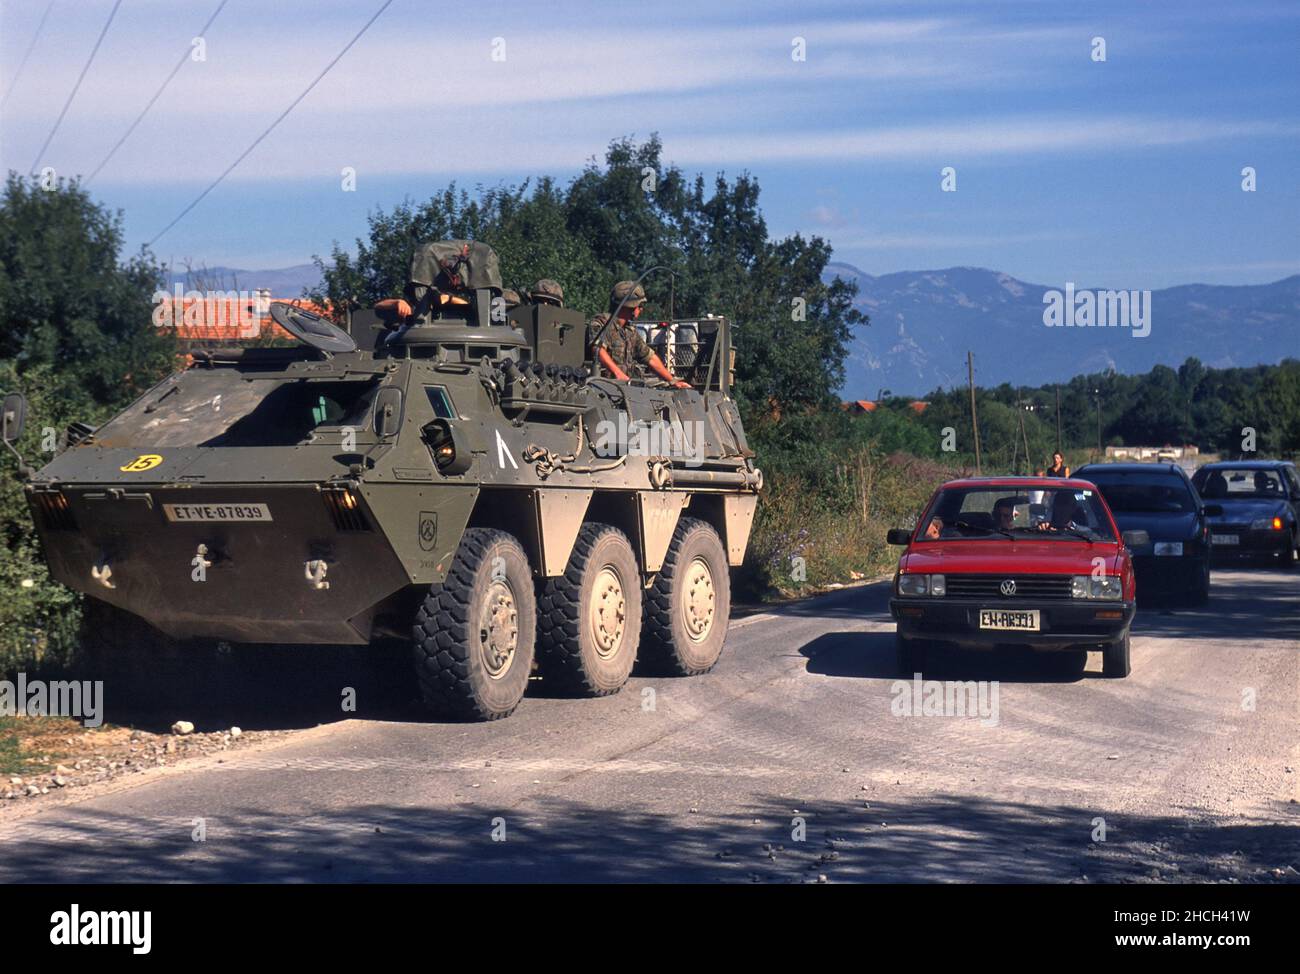 - NATO intervention in Kosovo, armored vehicles of the Spanish army patrolling a road near Istok town (July 2000))   - Intervento NATO in Kossovo, veicoli blindati dell'esercito spagnolo pattugliano una strada vicino alla città  di Istok (Luglio 2000) Stock Photo